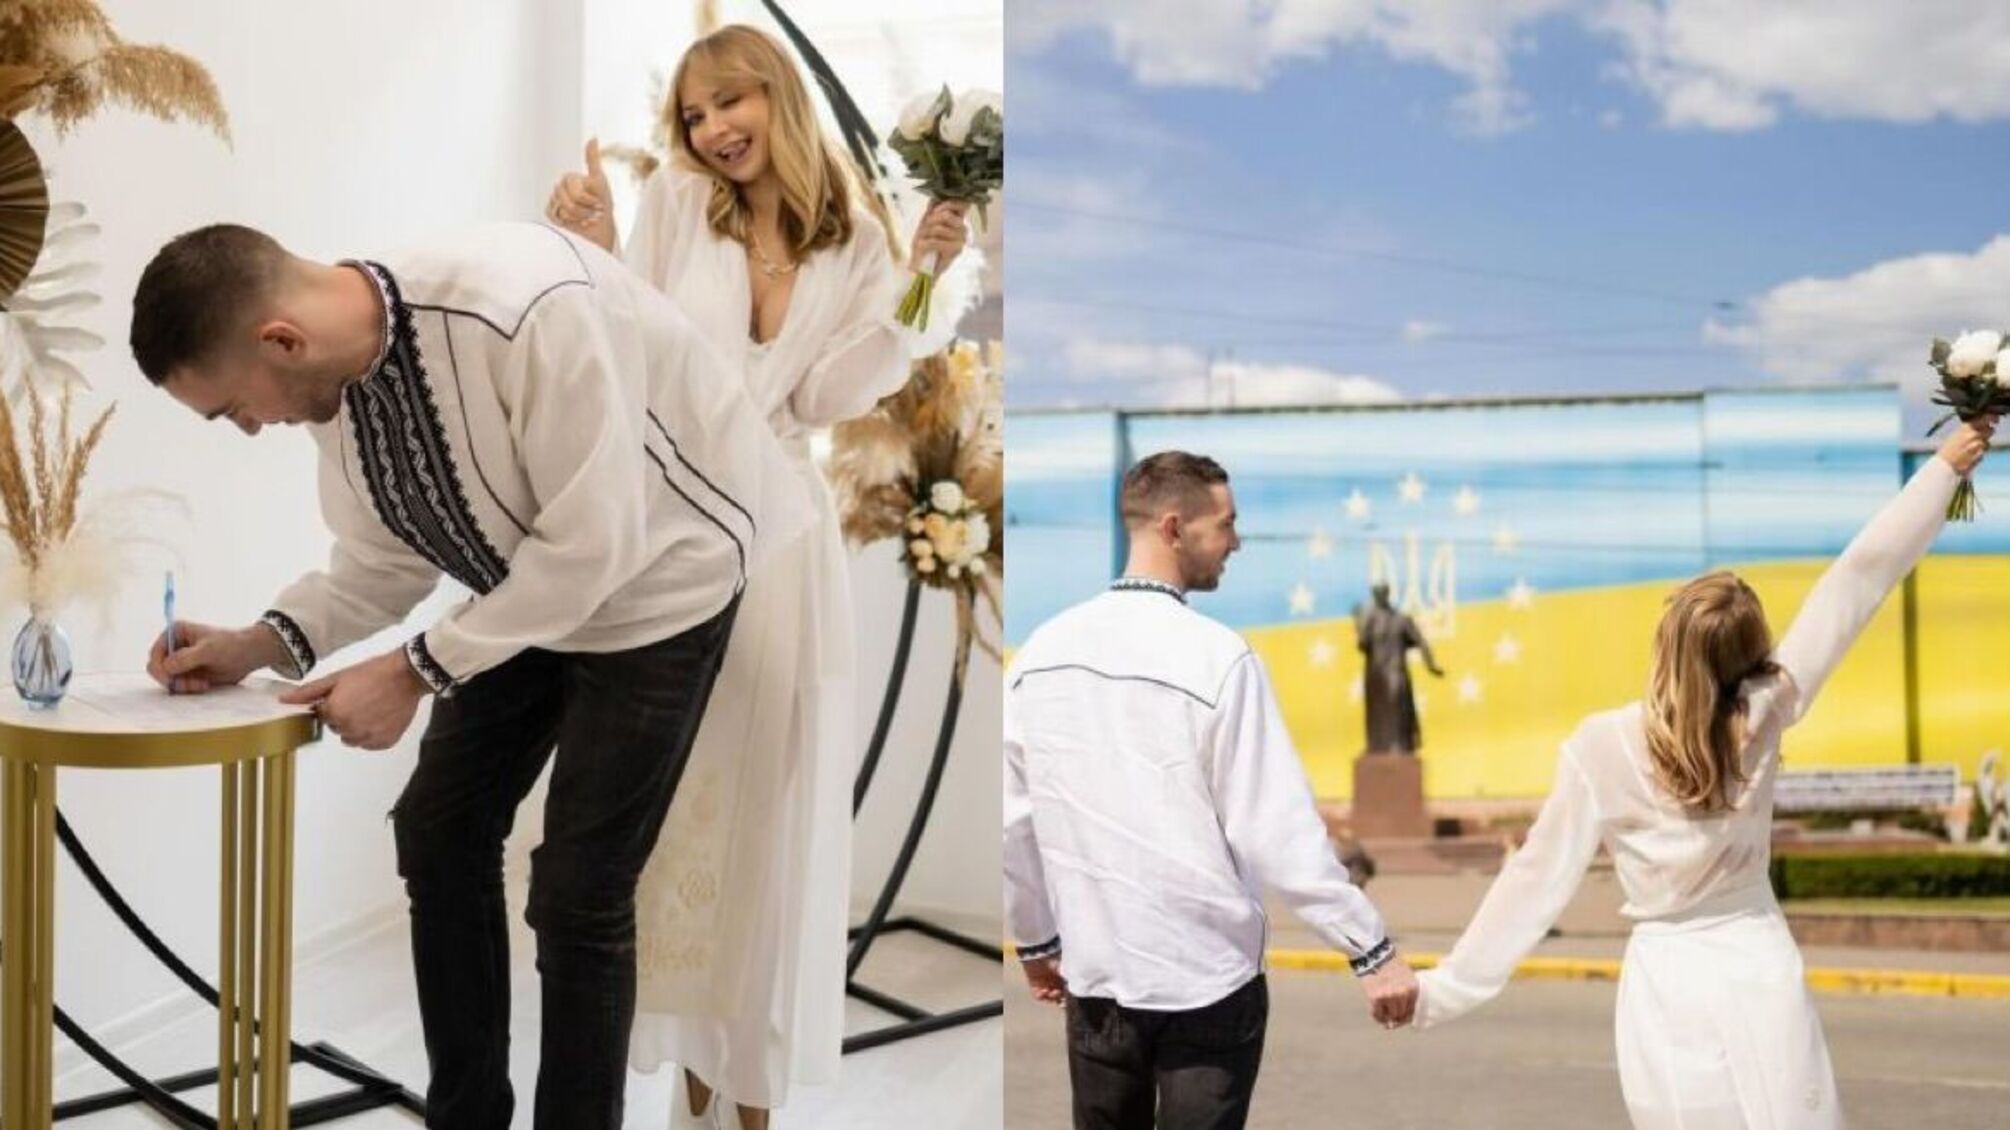 37-річна Ірина Сопонару вперше вийшла заміж і показала фото зі свого весілля